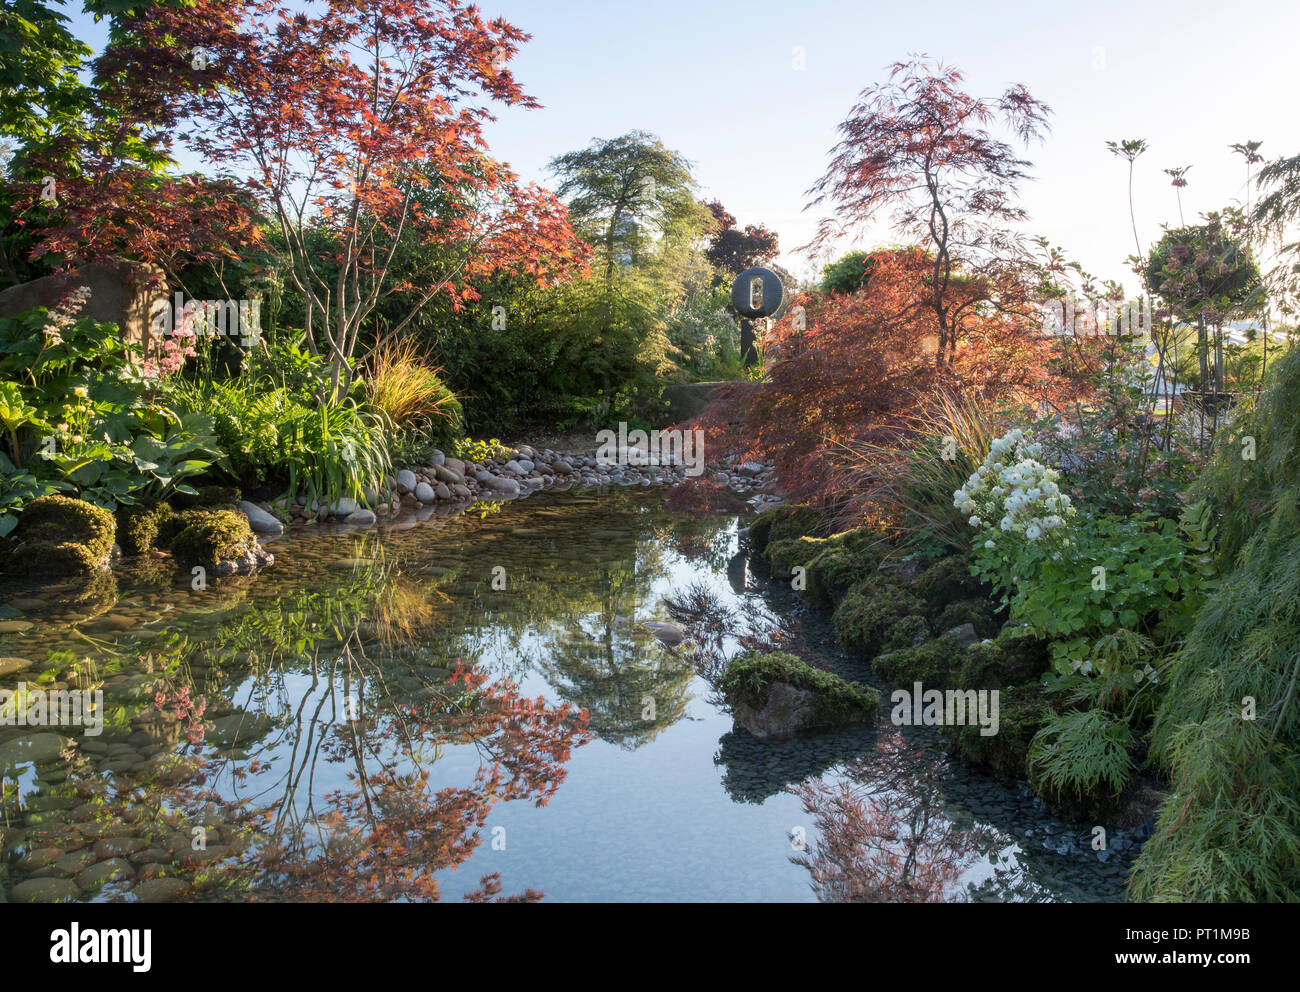 Japanischer Zen-Garten großer Teich Wasserspiel mit moosbedeckten Steinen mit, Gunnera manicata - Rodgersia aesculifolia - Acer palmatum Bäume - UK Stockfoto